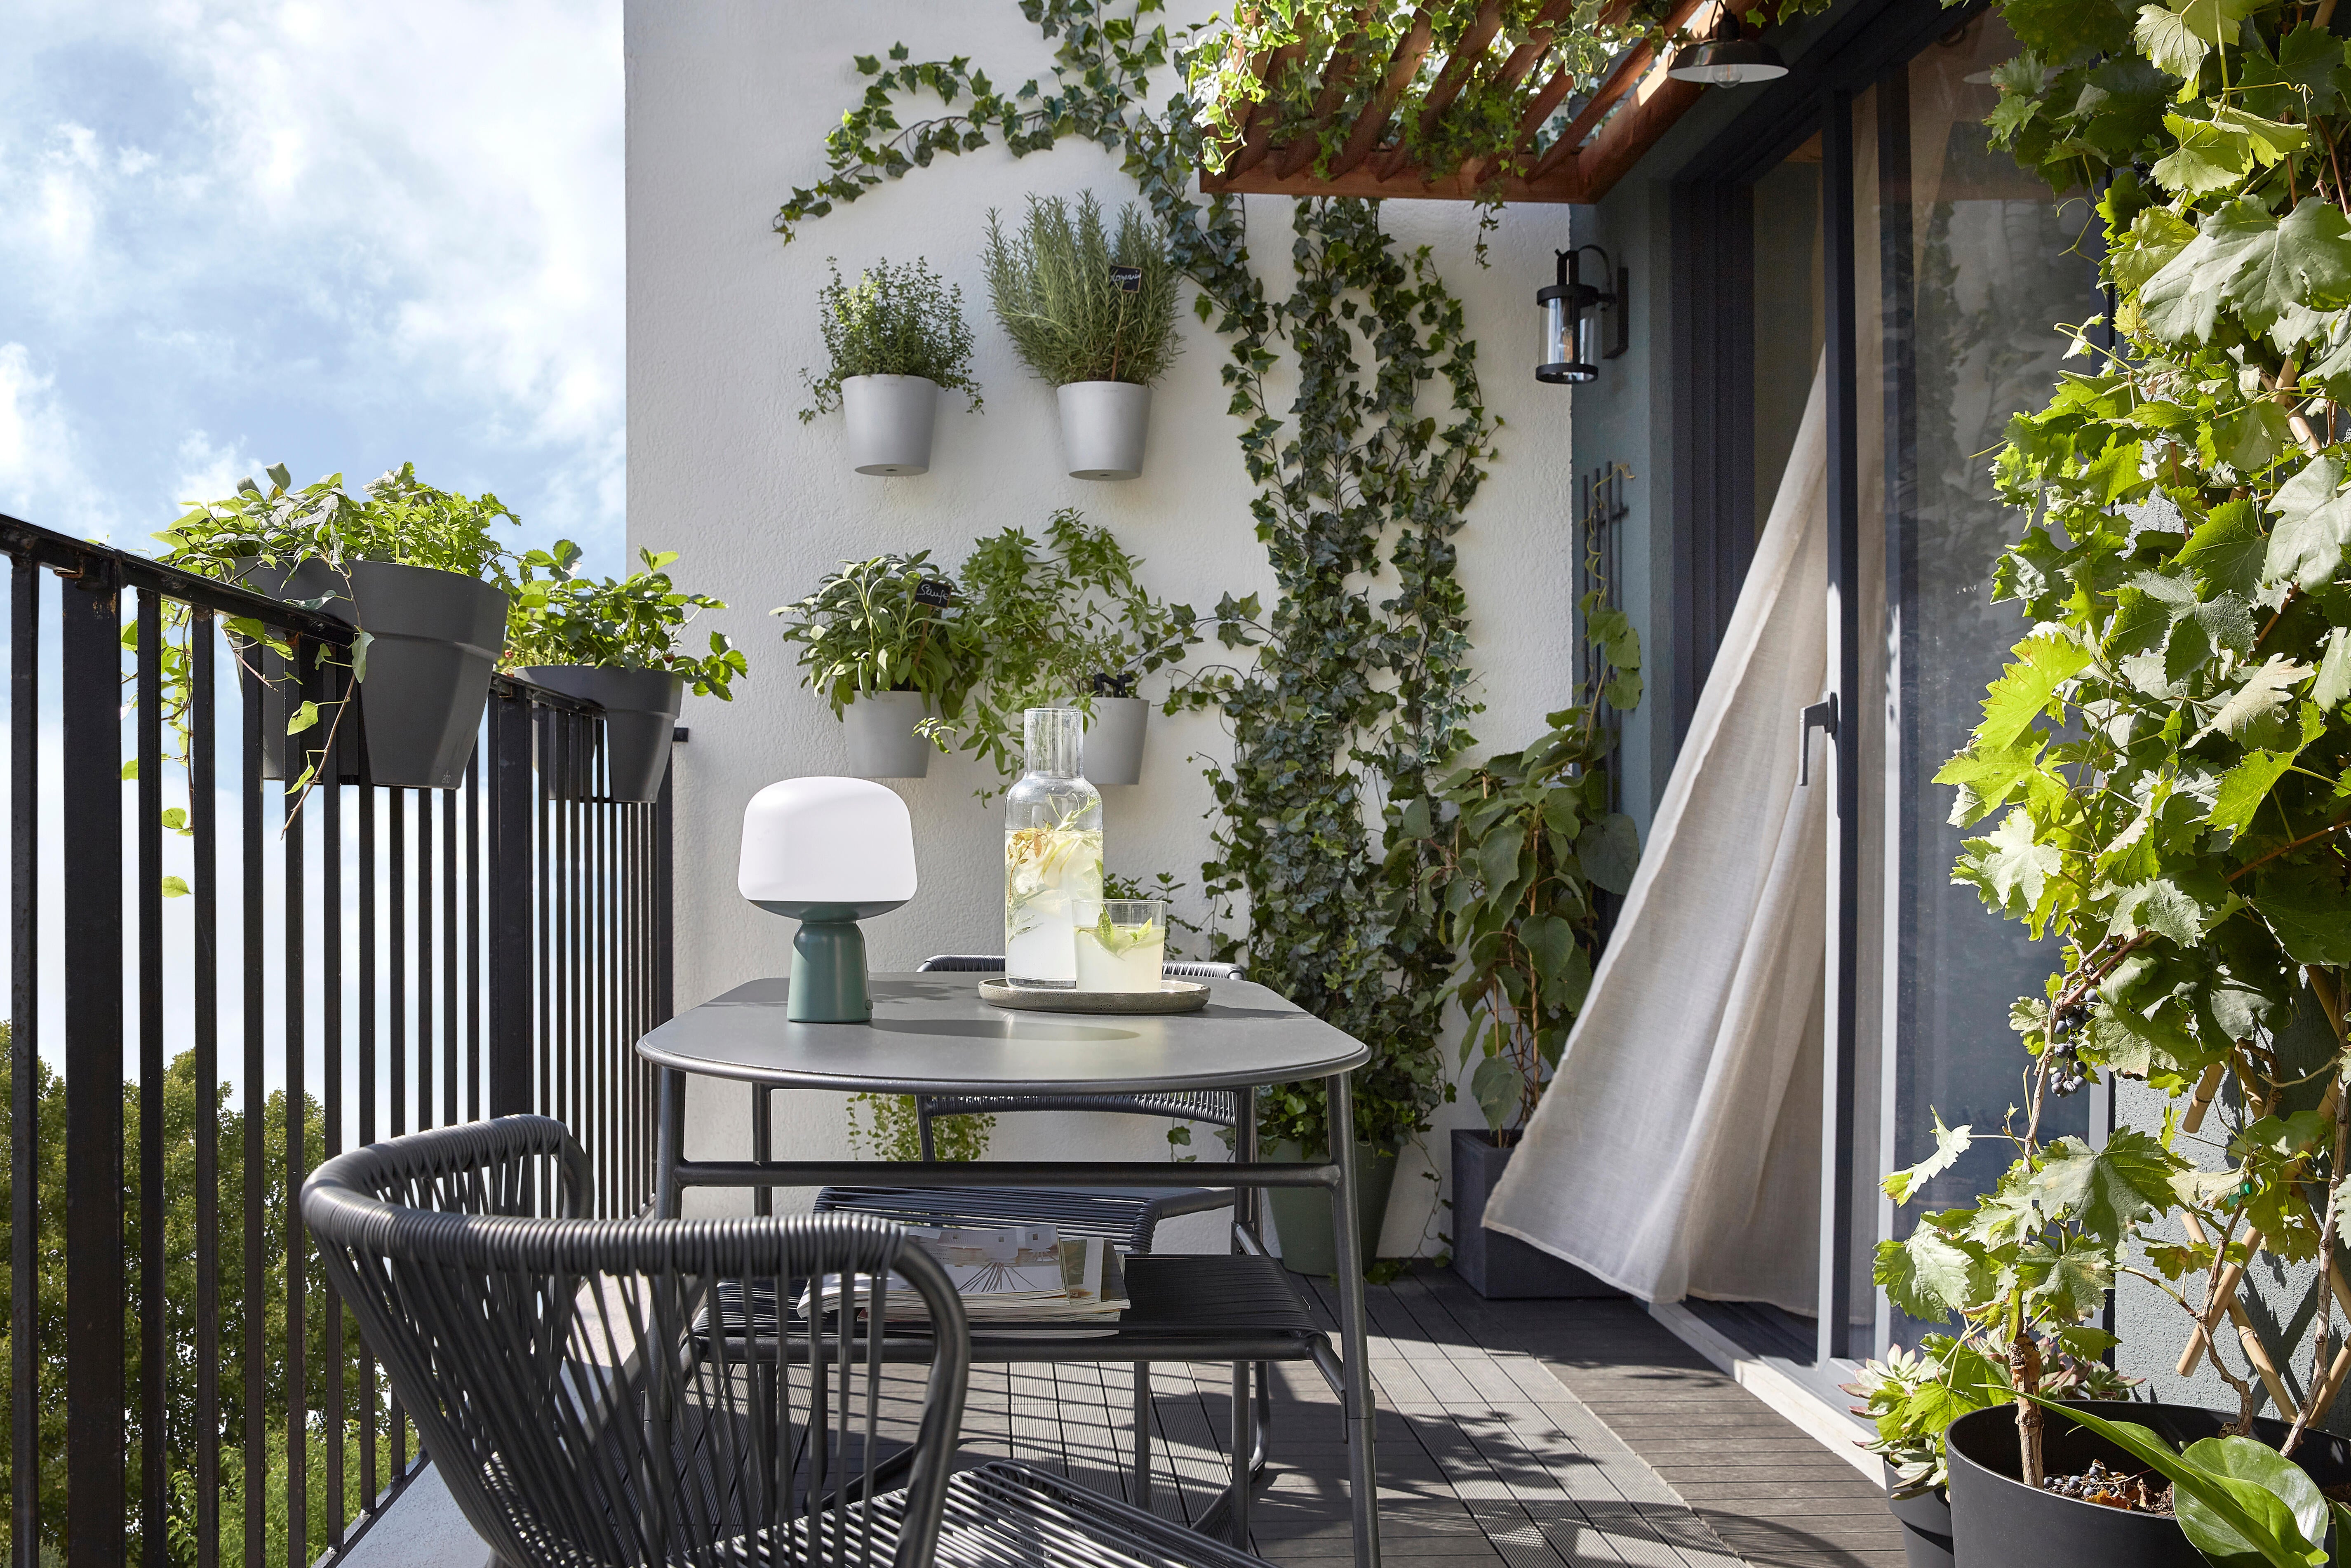 20 idées pour fabriquer un décor de jardin unique  Outdoor decor backyard,  Backyard area, Backyard patio designs